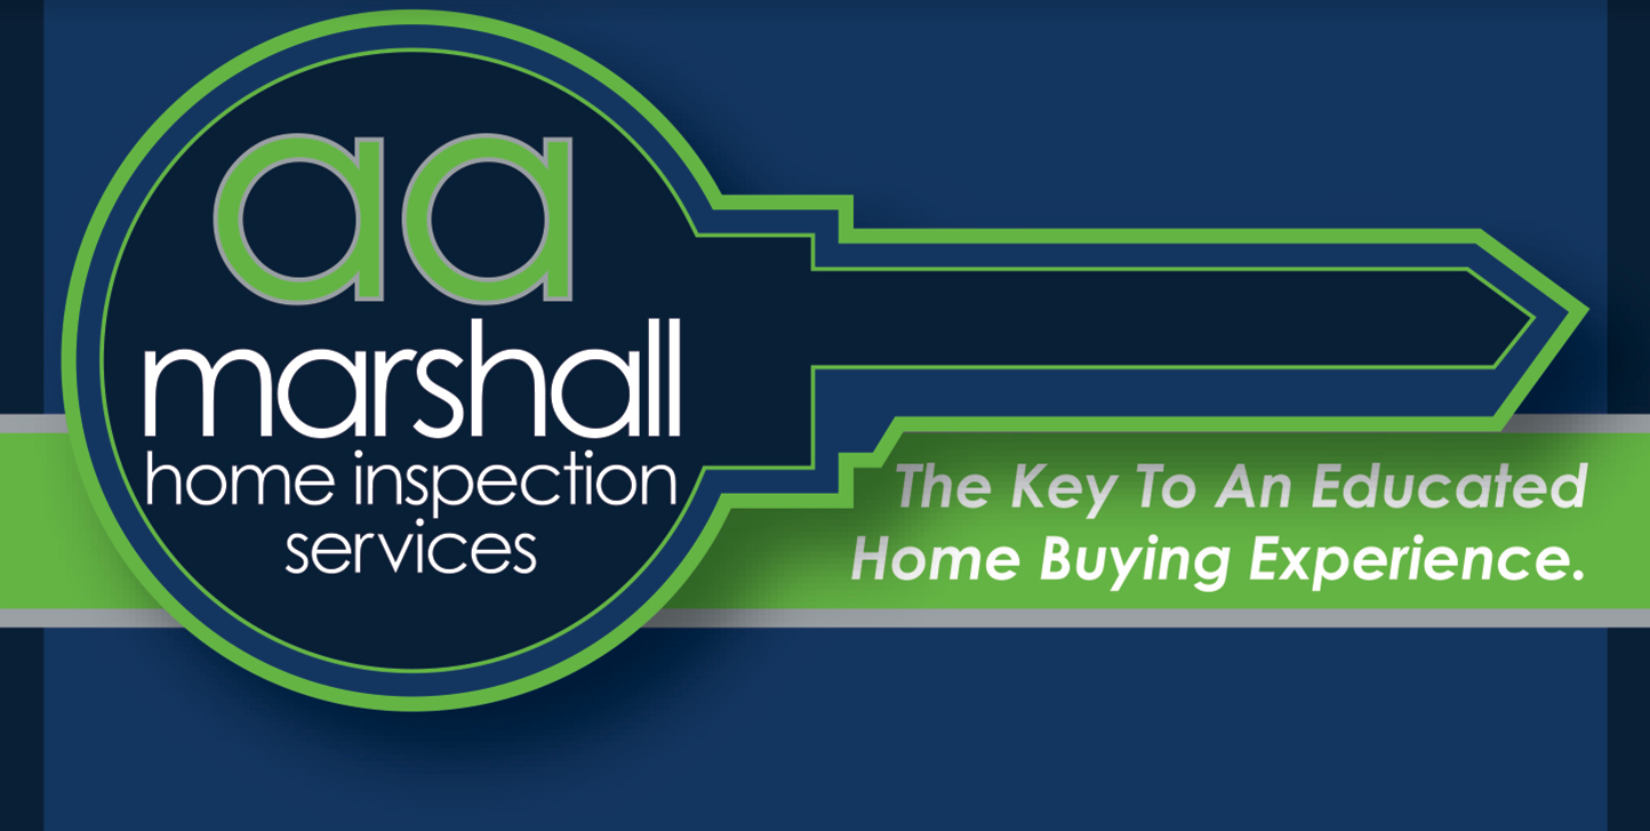 AA Marshall Home Inspection Services, Inc. 601 E Main St, Mahomet Illinois 61853